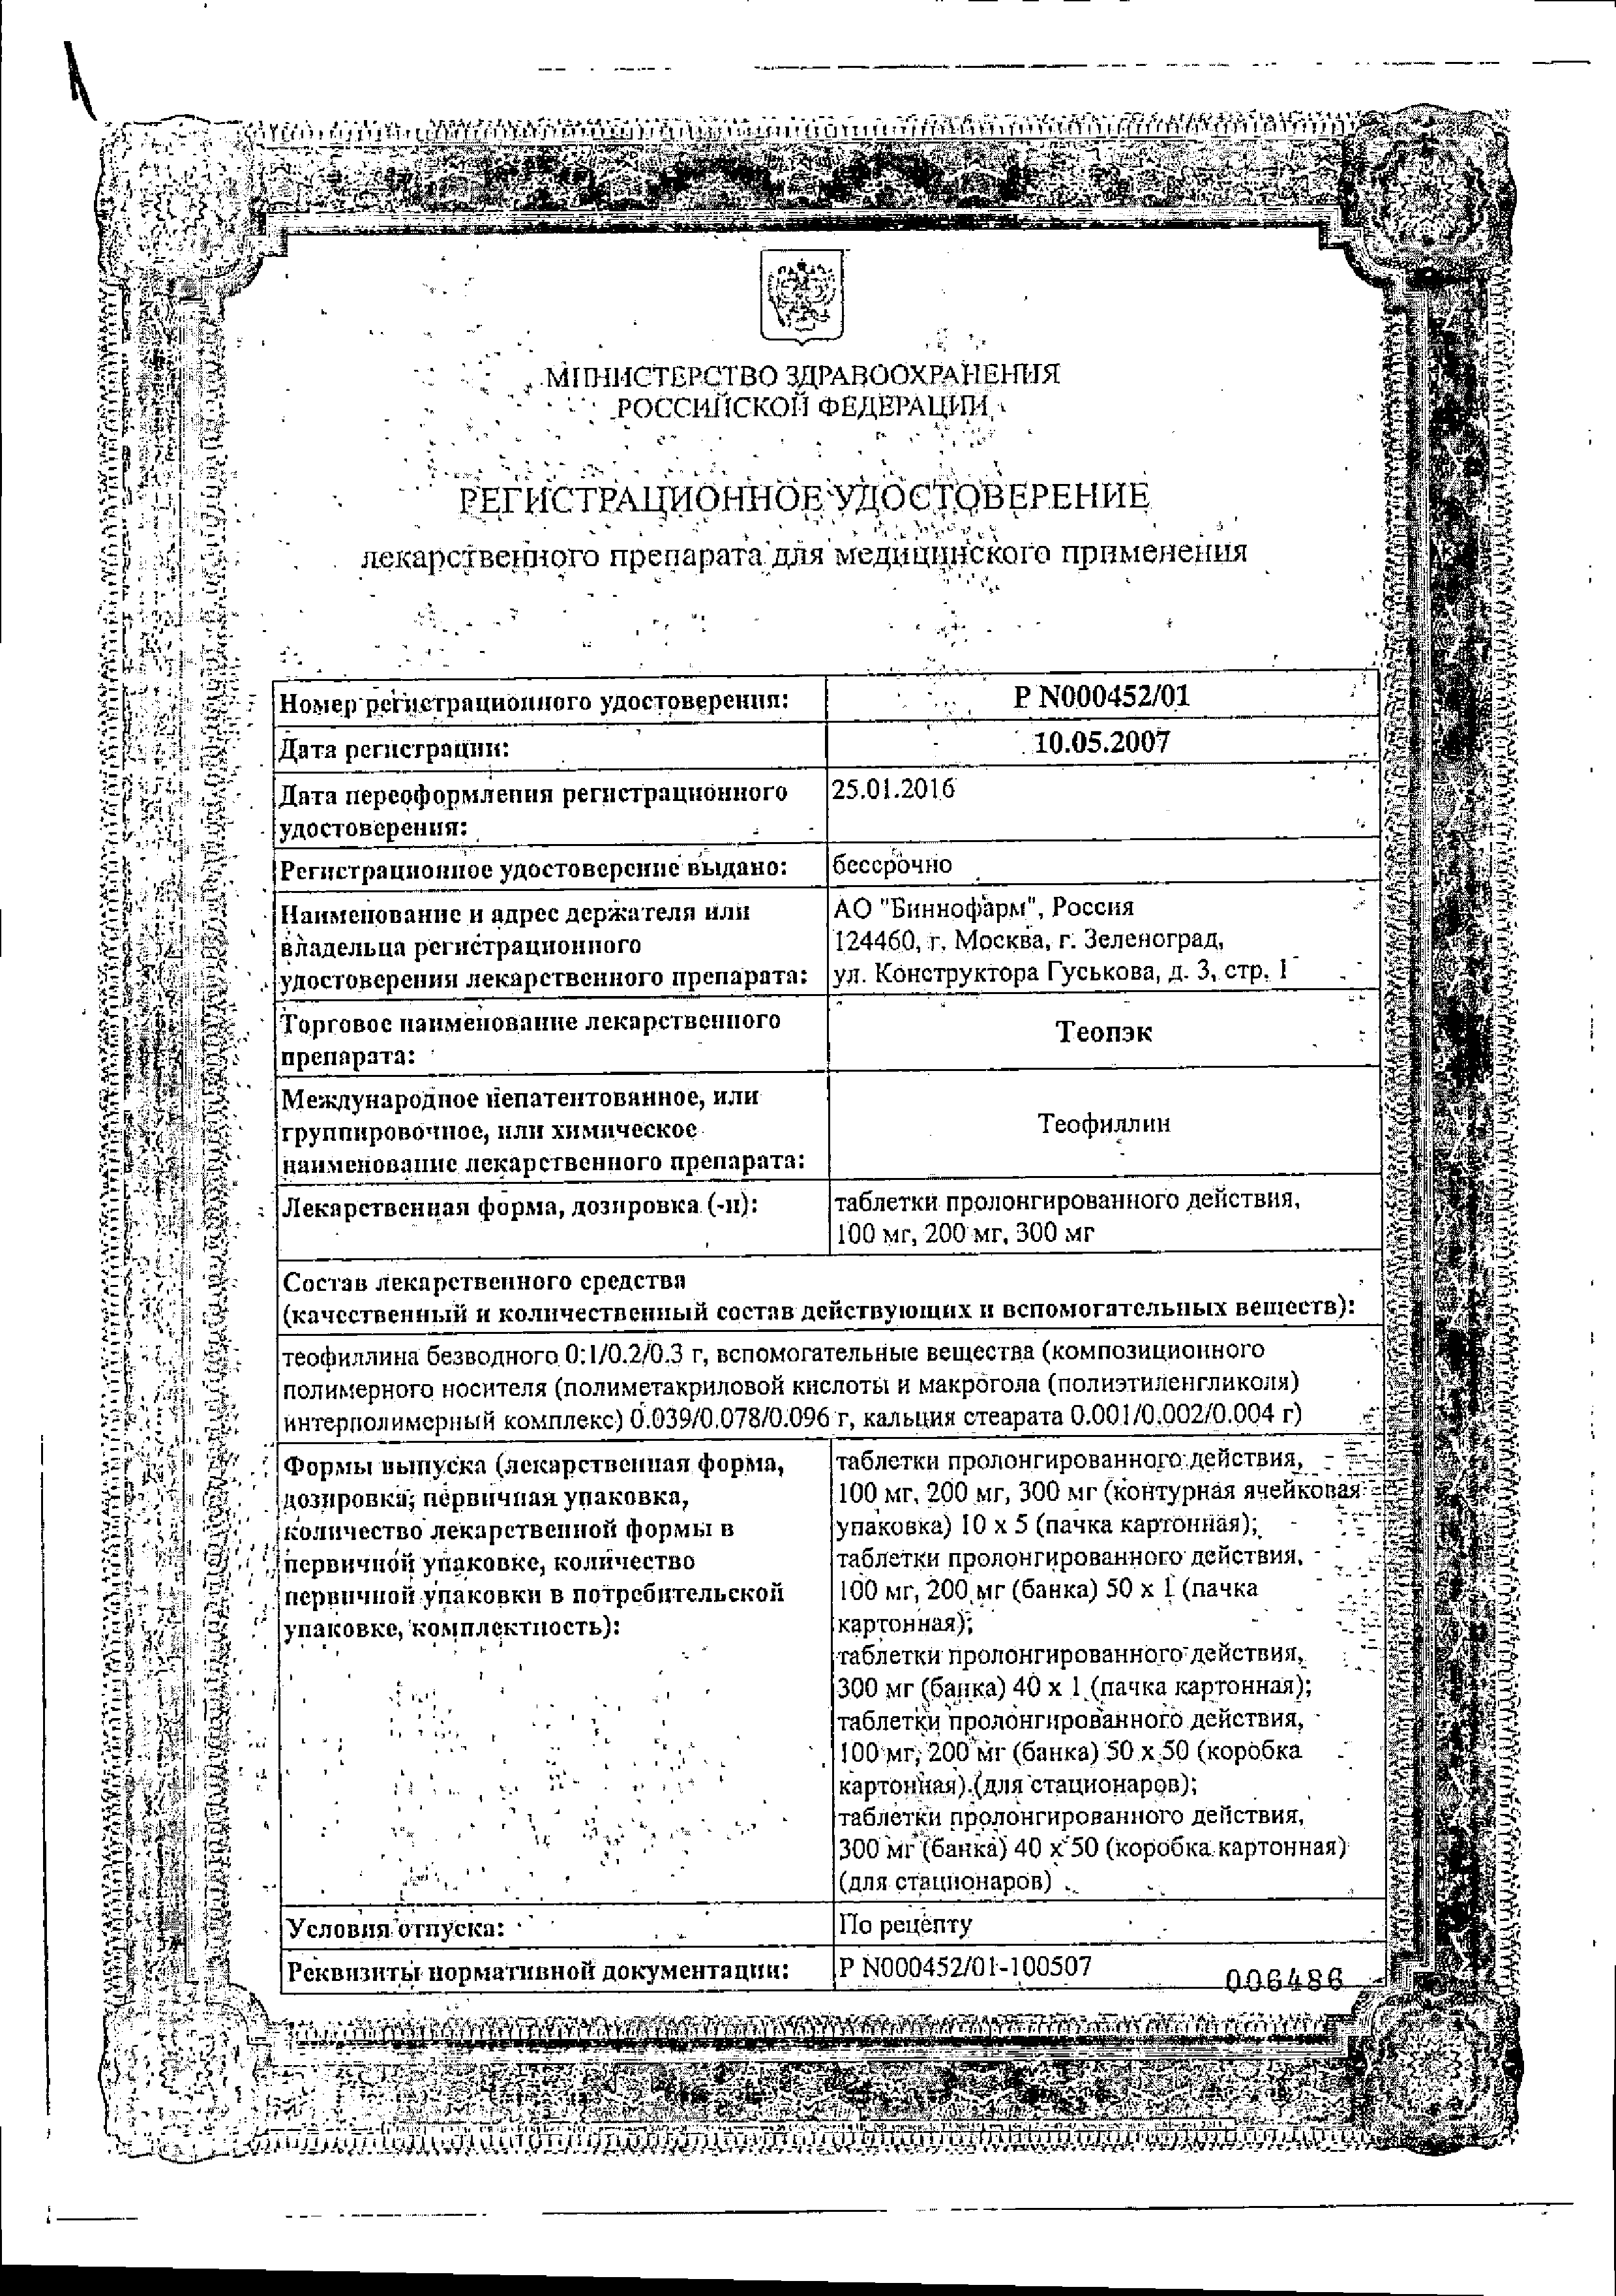 Теопэк сертификат